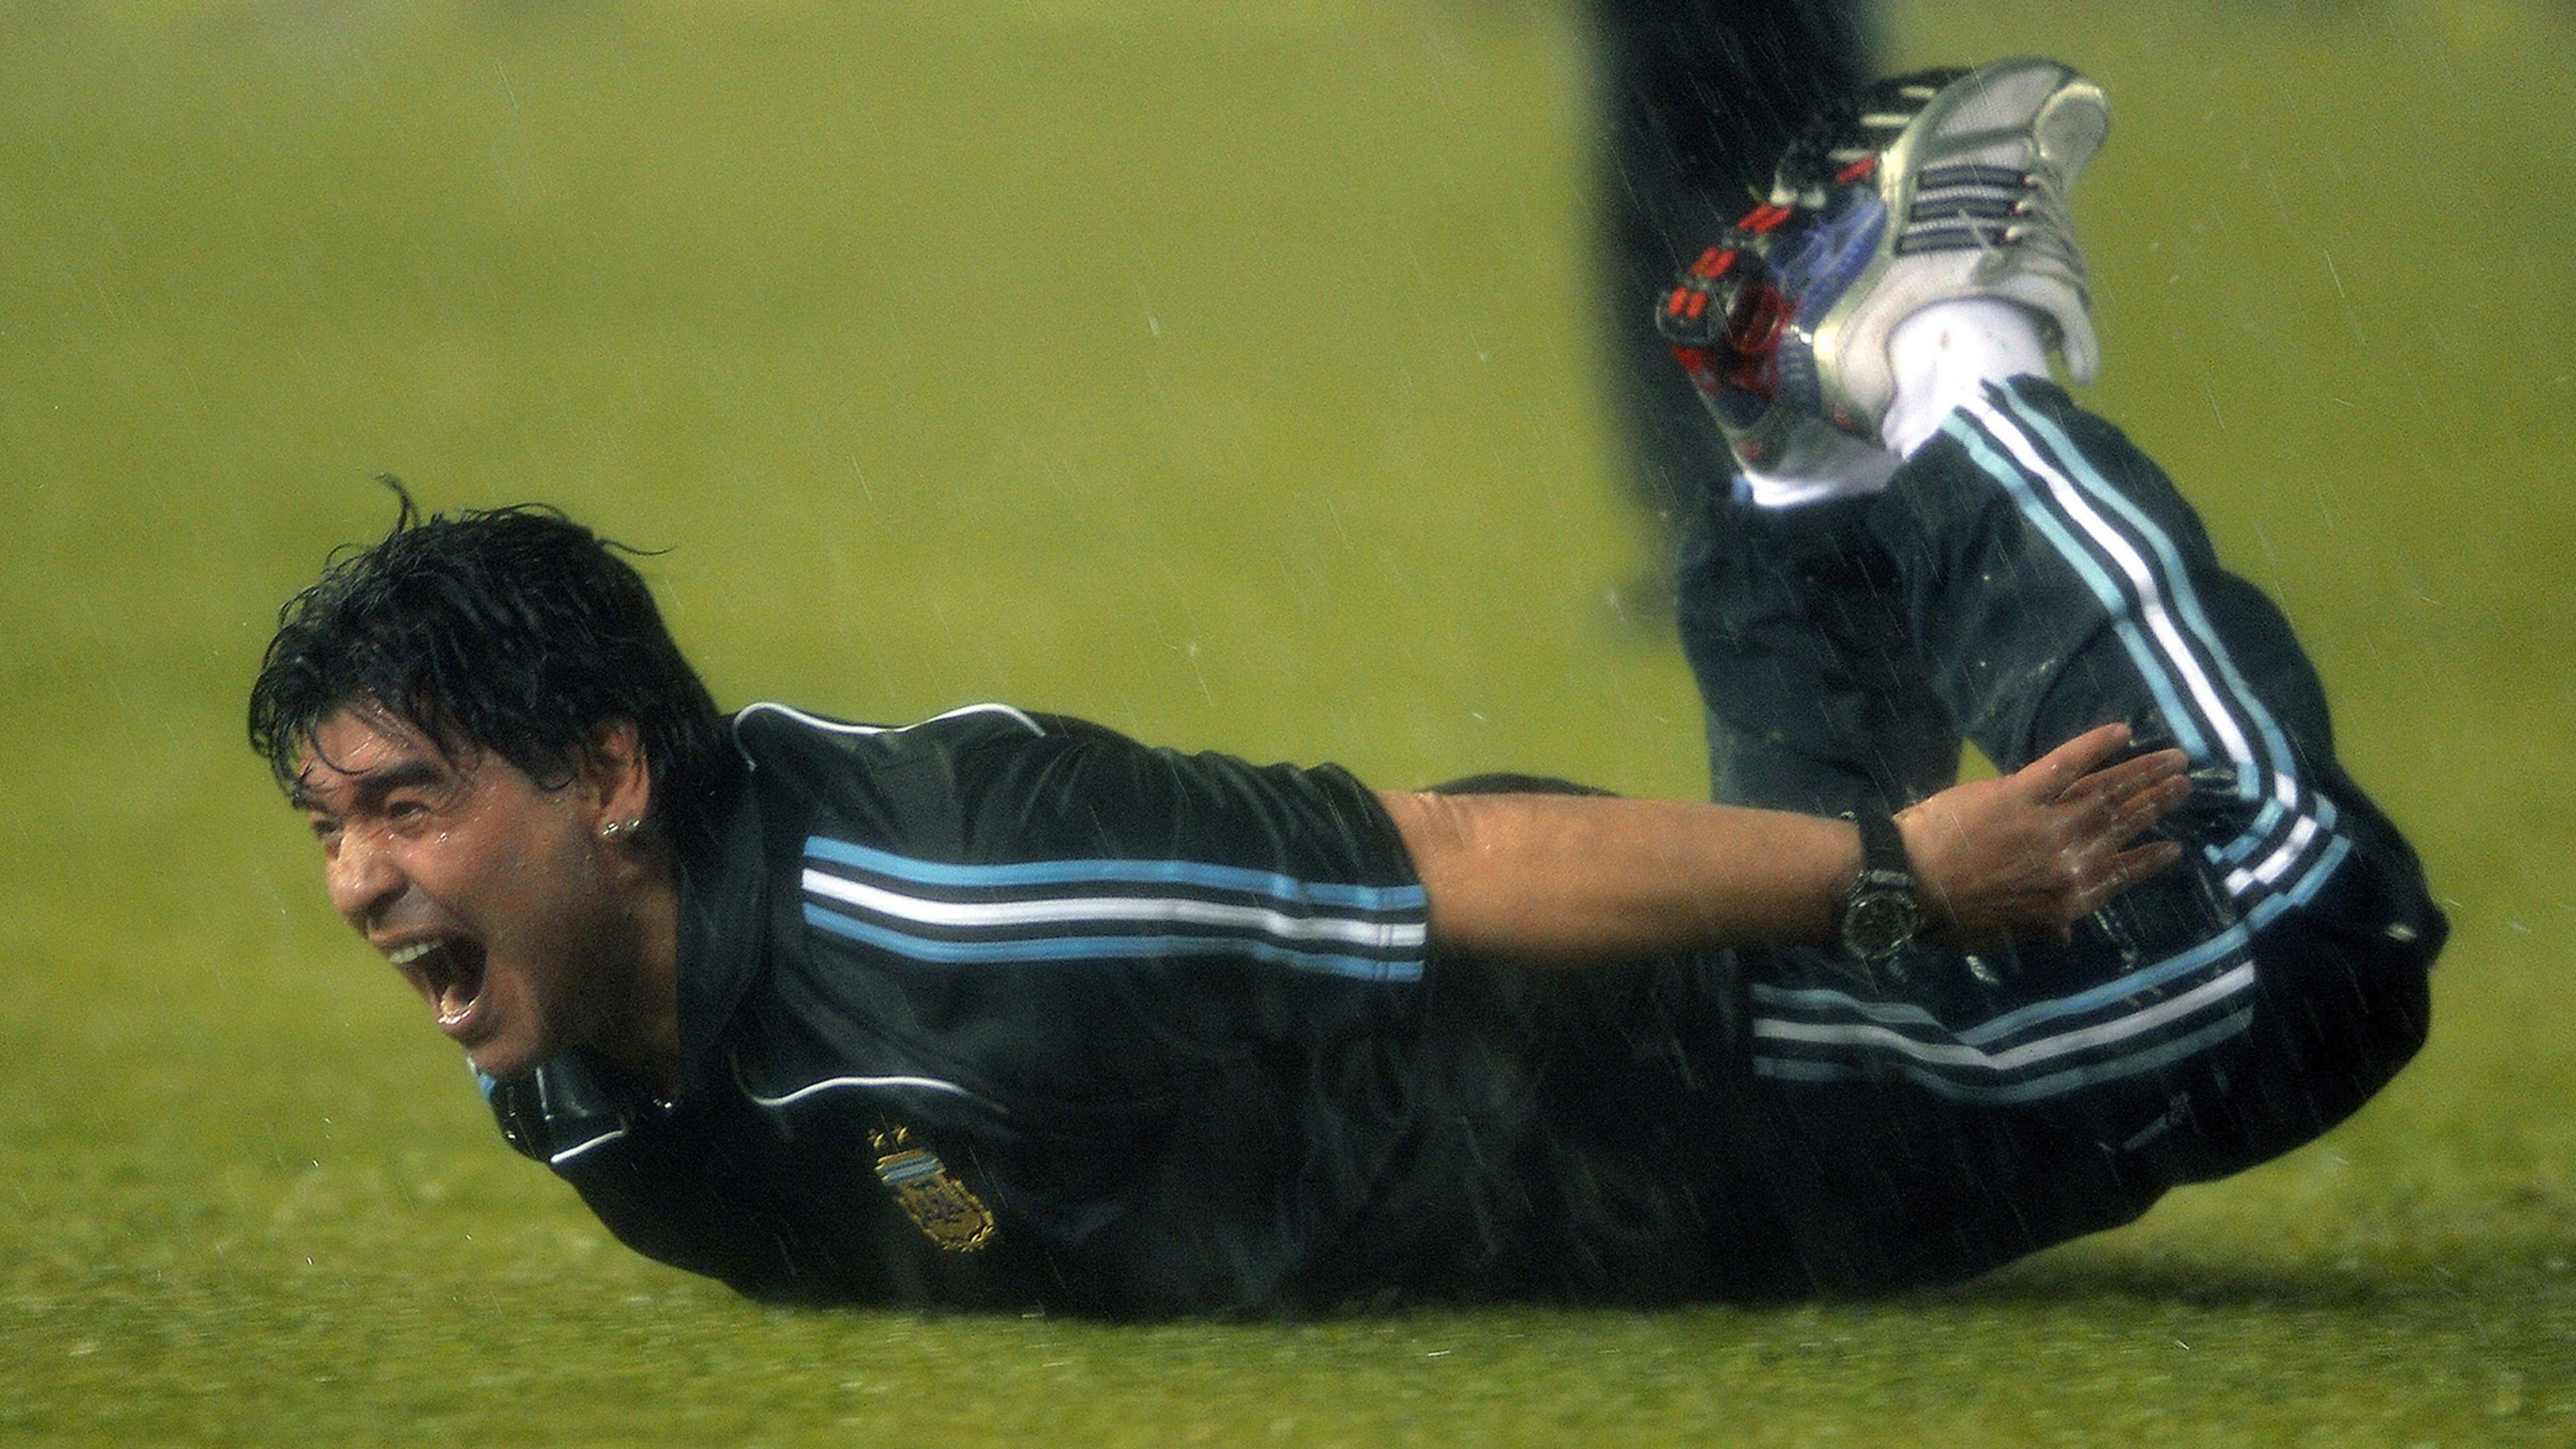 Diego Maradona Peru Argentina World Cup qualifying 2010